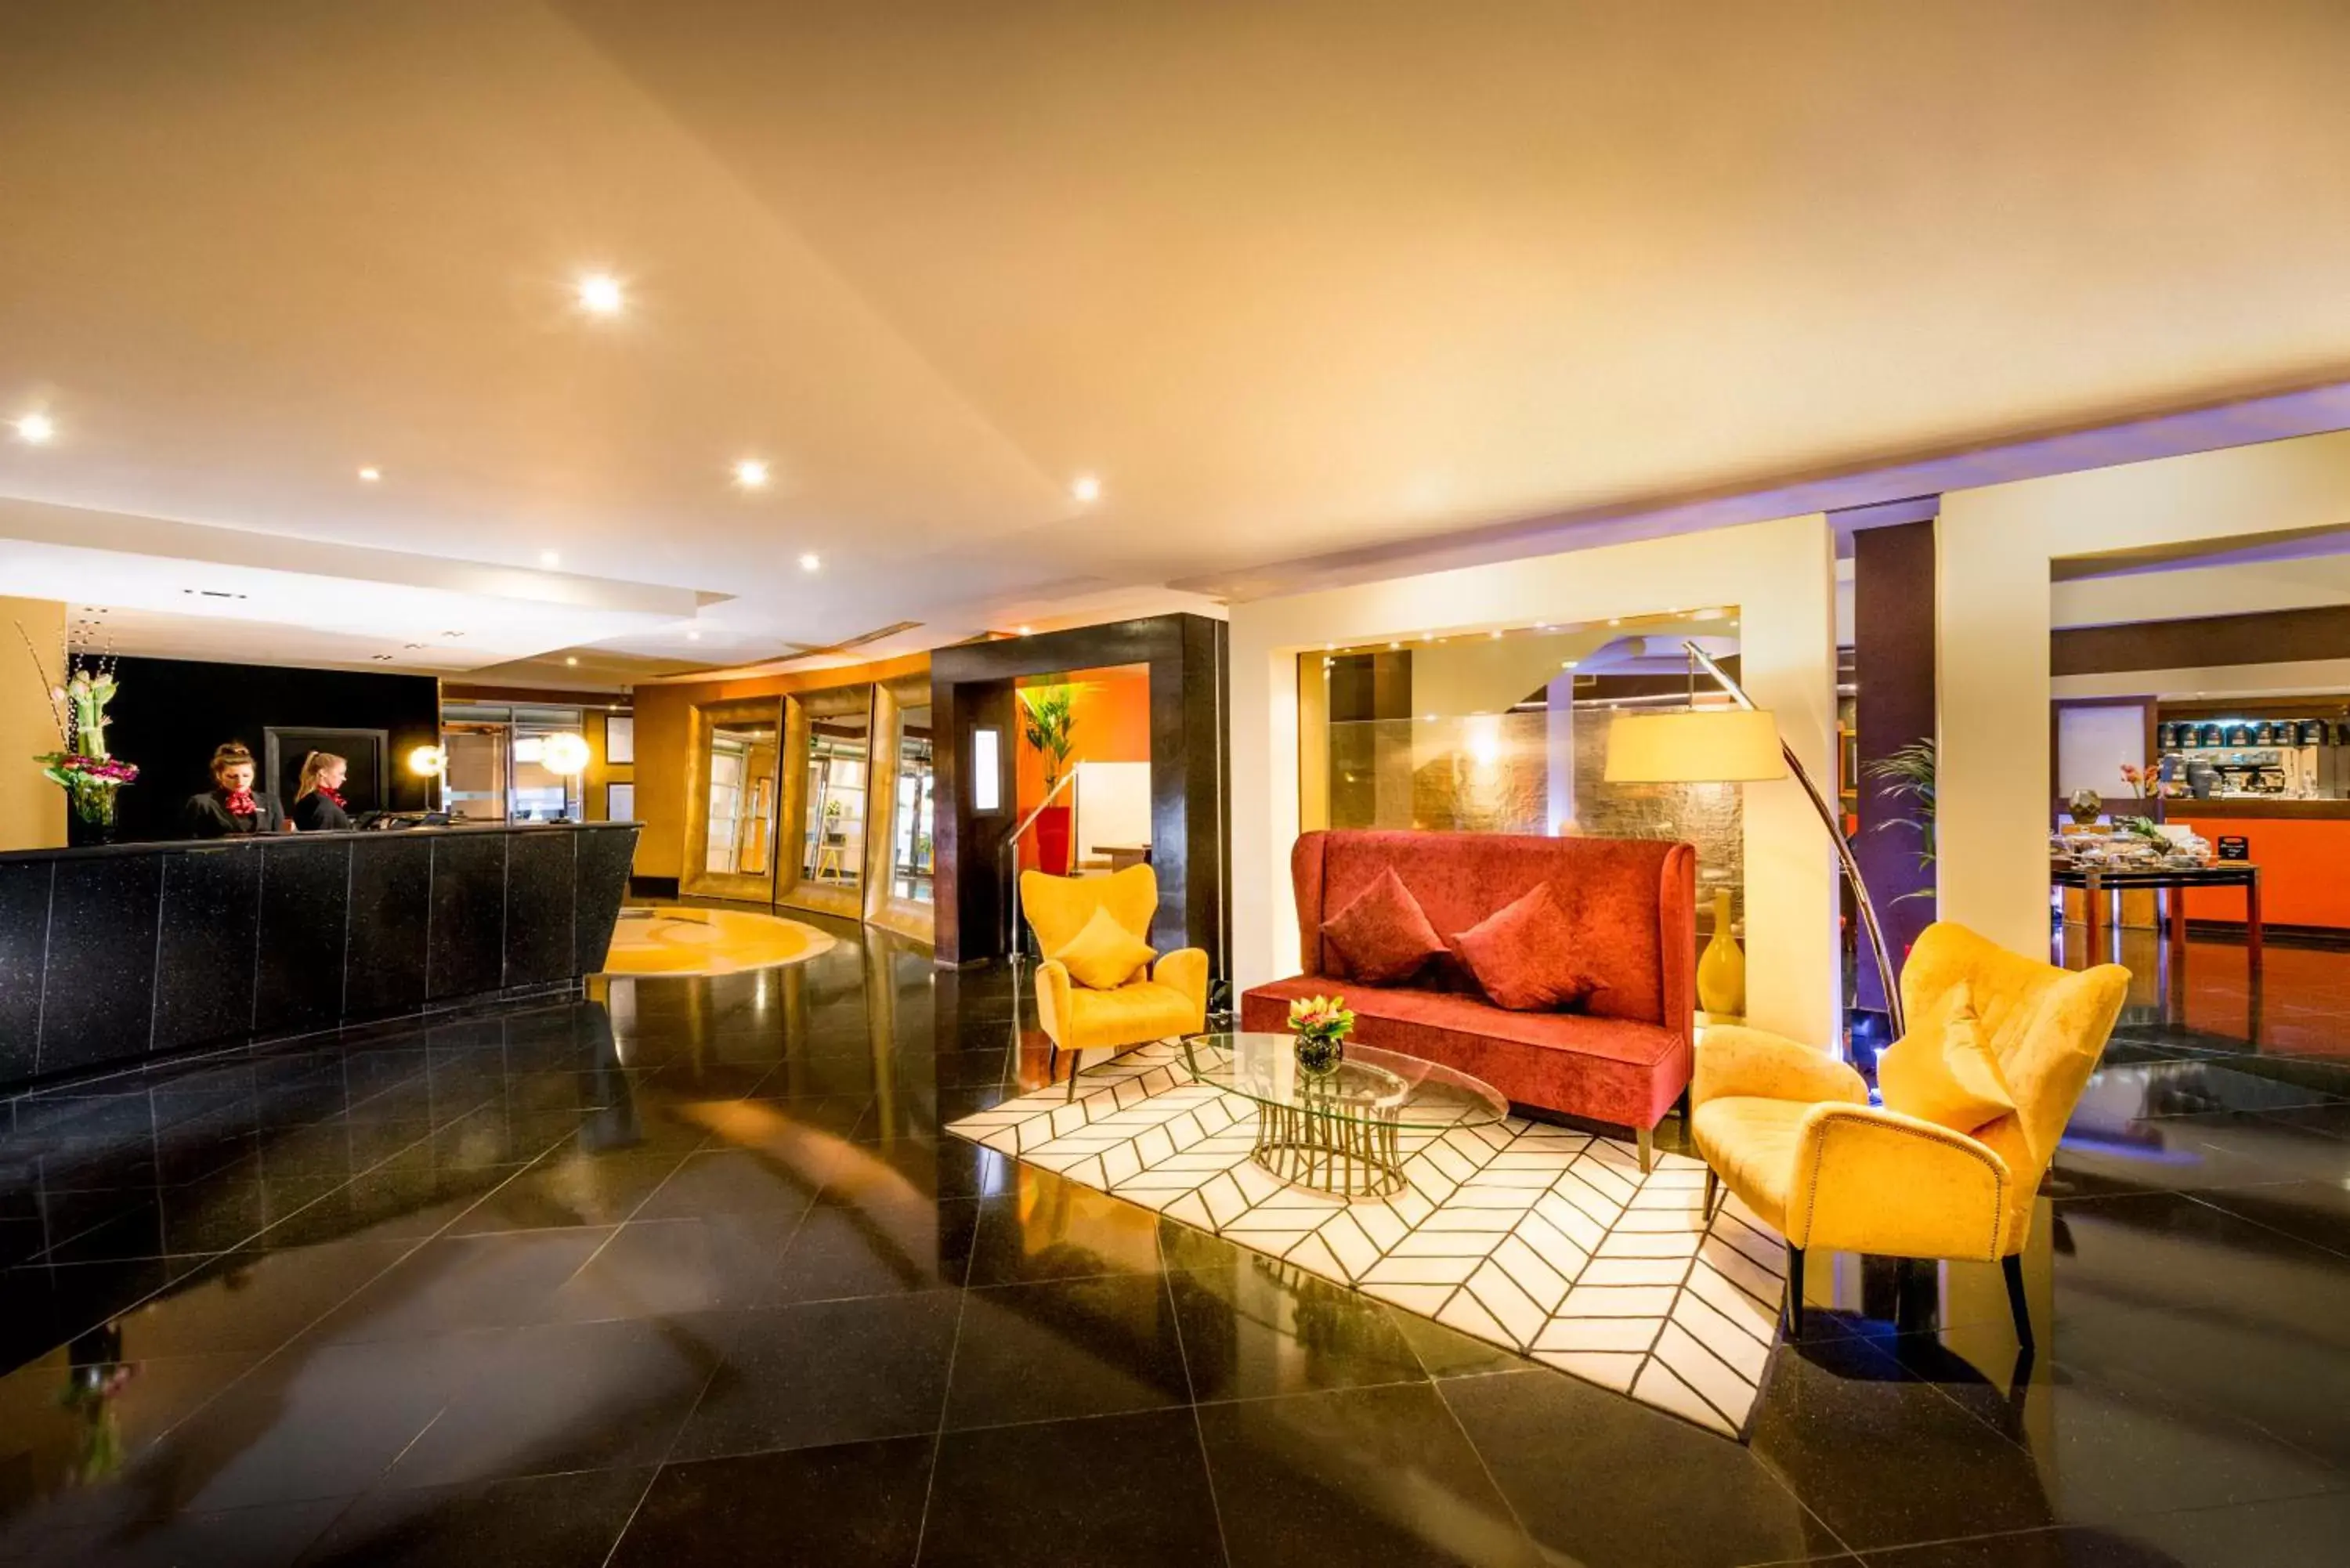 Lobby or reception in Millennium Hotel London Knightsbridge